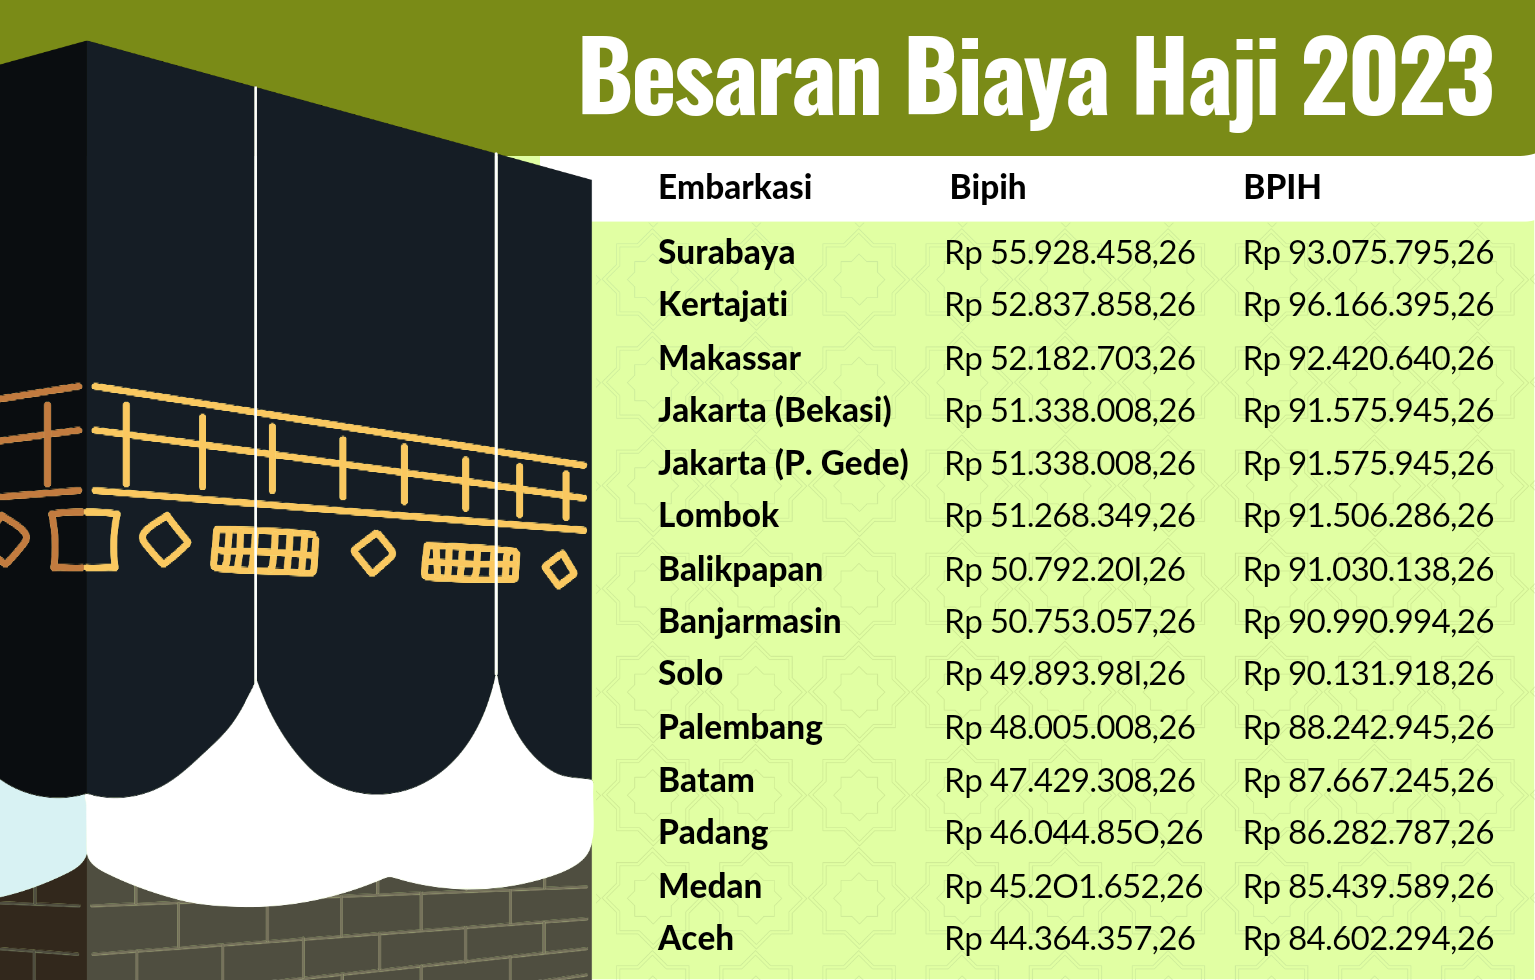 Biaya Haji Jamaah Embarkasi Surabaya Hampir 60 Juta, Termahal di Indonesia